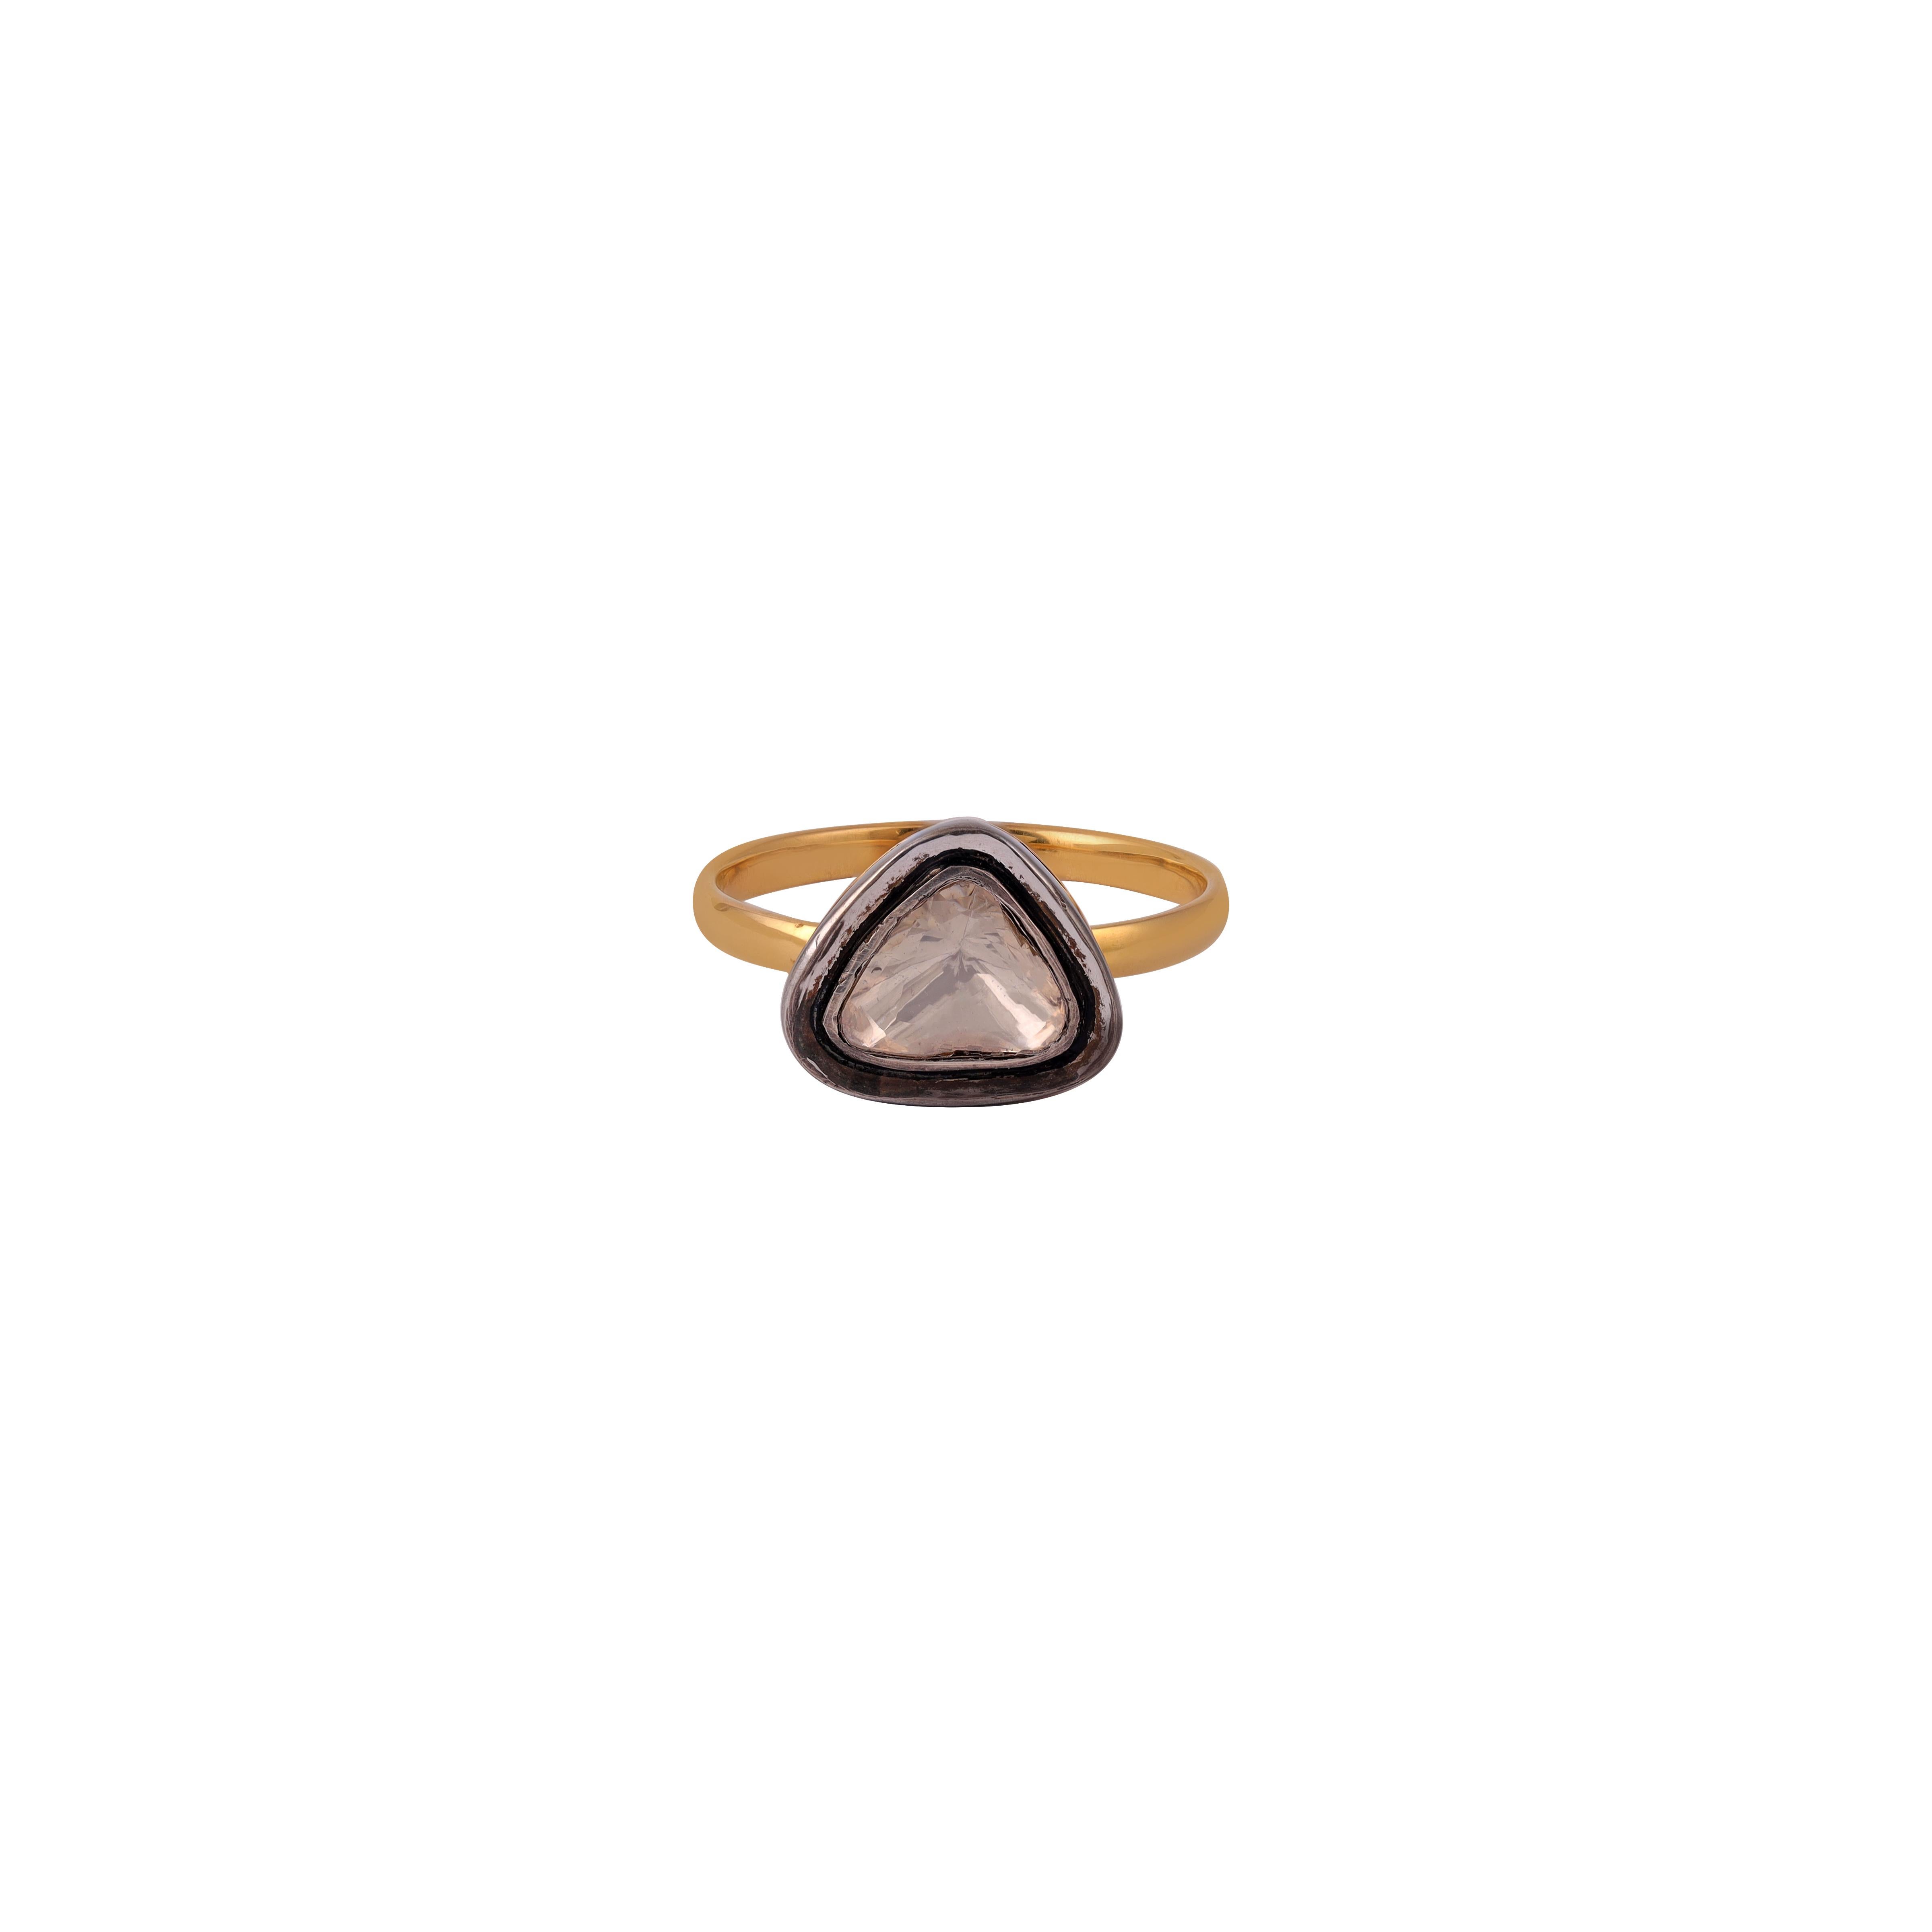 Prächtiger 0.25 Karat Diamant Polki / Rosenschliff  Handgefertigter Ring im antiken Stil

18 k Gold  1,63 GMS
Silber        1.02
Kundenspezifische Dienstleistungen
Die Größenänderung ist verfügbar.
Anpassungen anfordern
